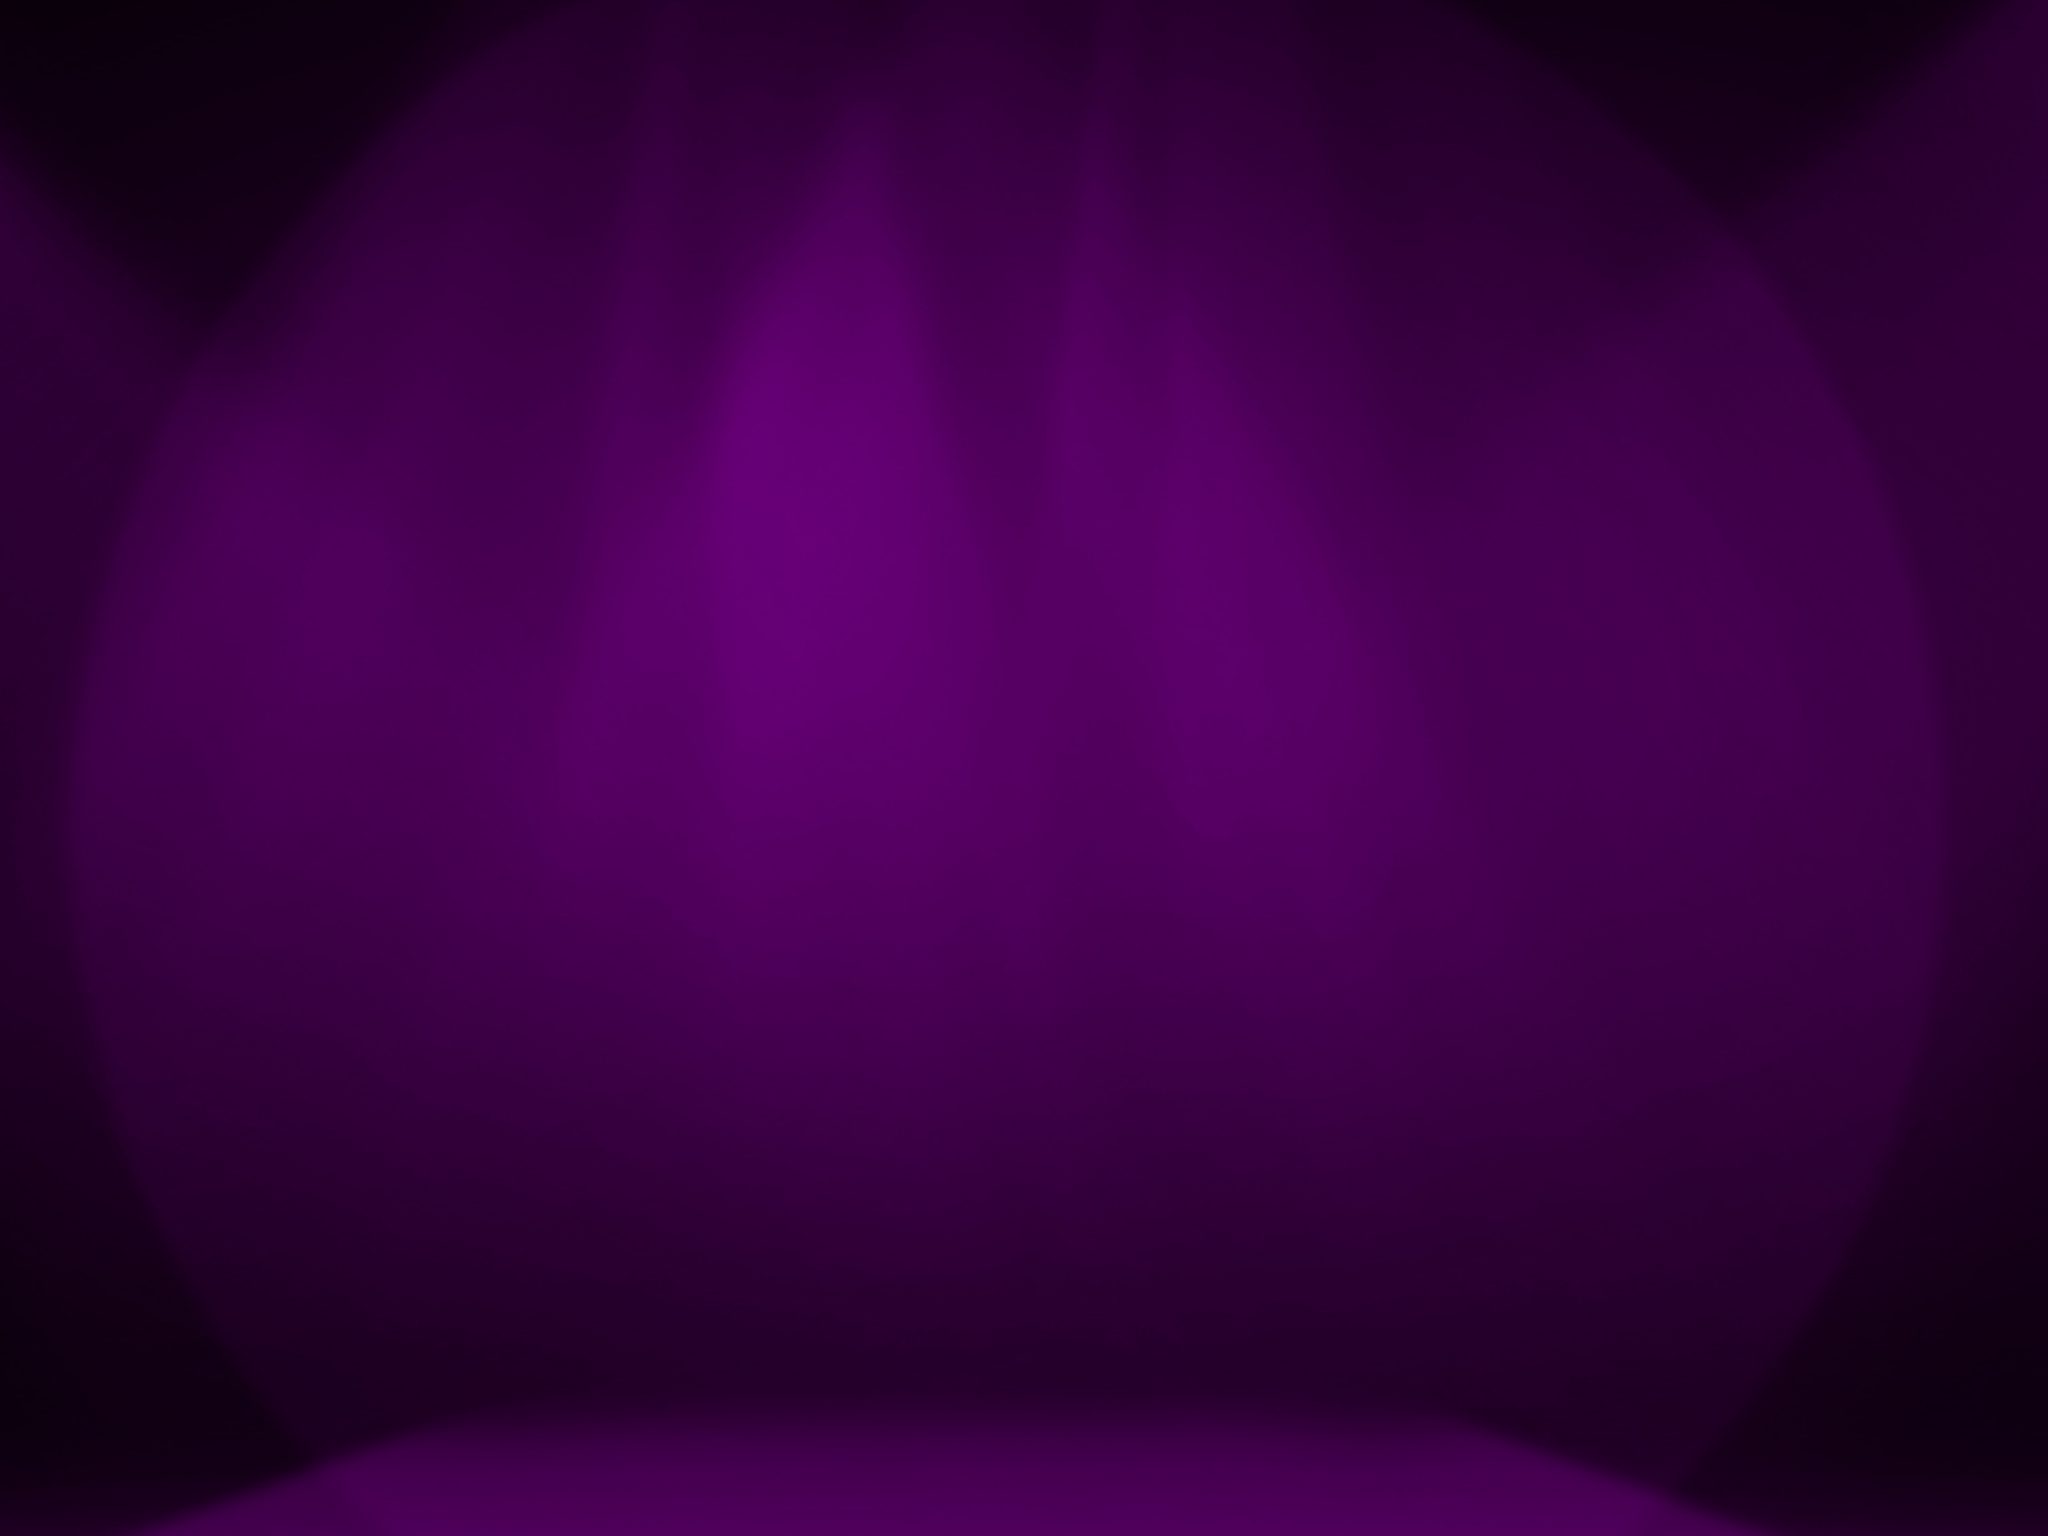 2048x1536 wallpaper Purple Stage Decoration iPad Wallpaper 2048x1536 pixels resolution